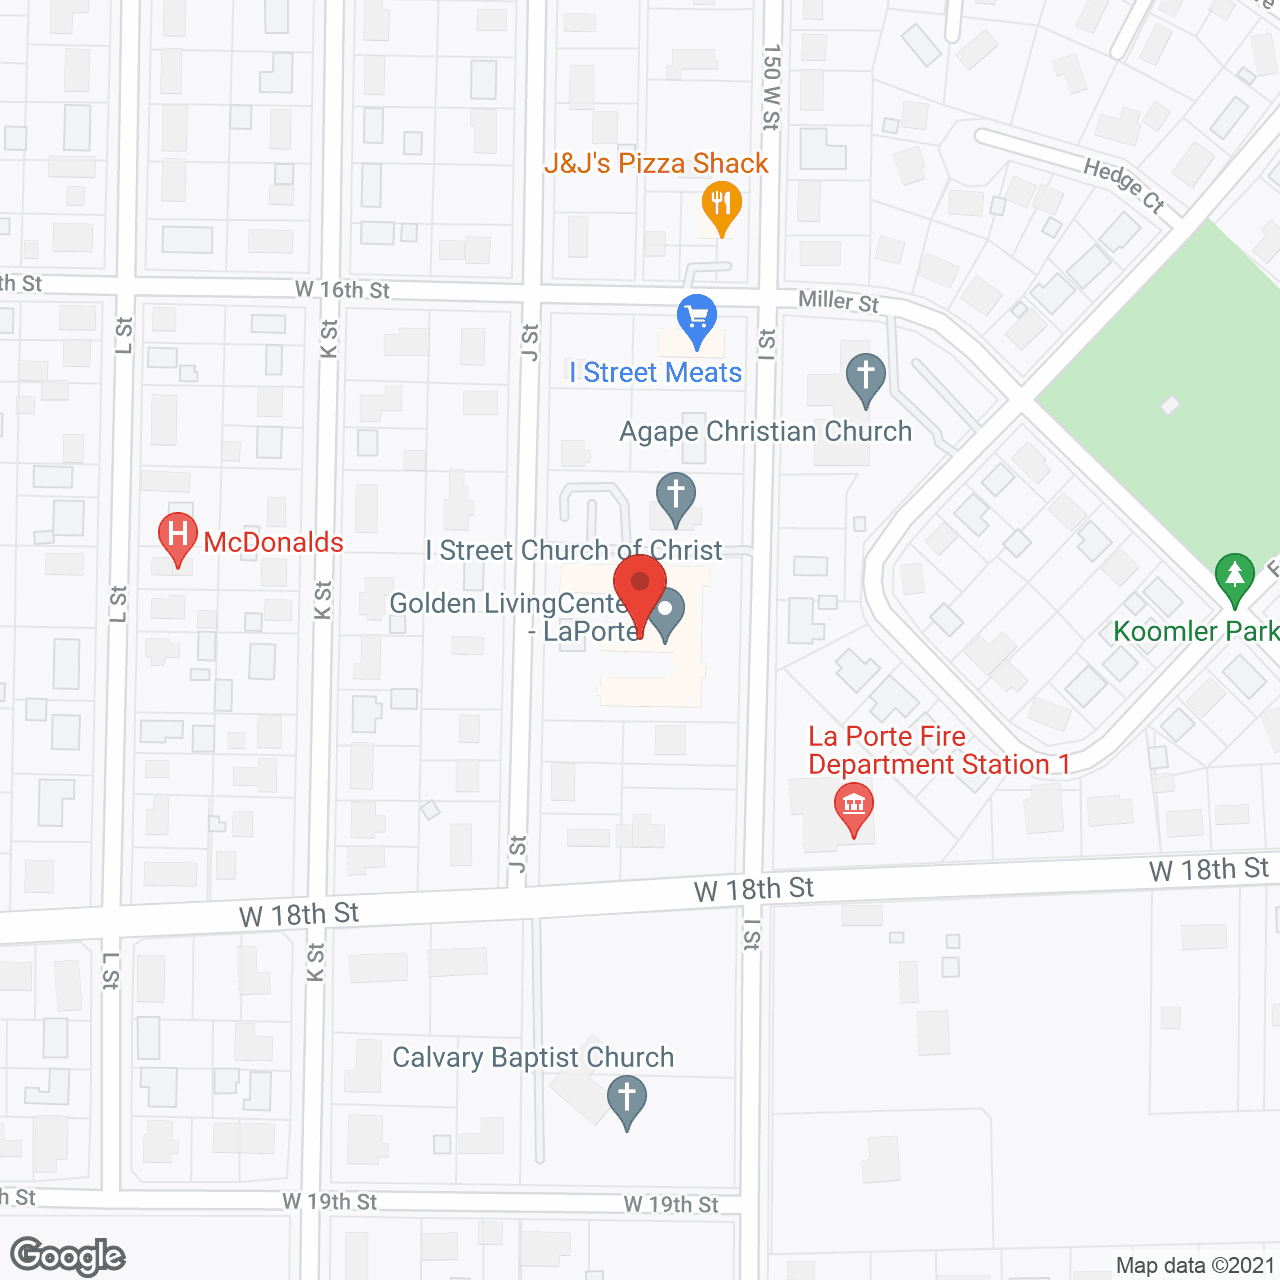 Golden LivingCenter - LaPorte in google map